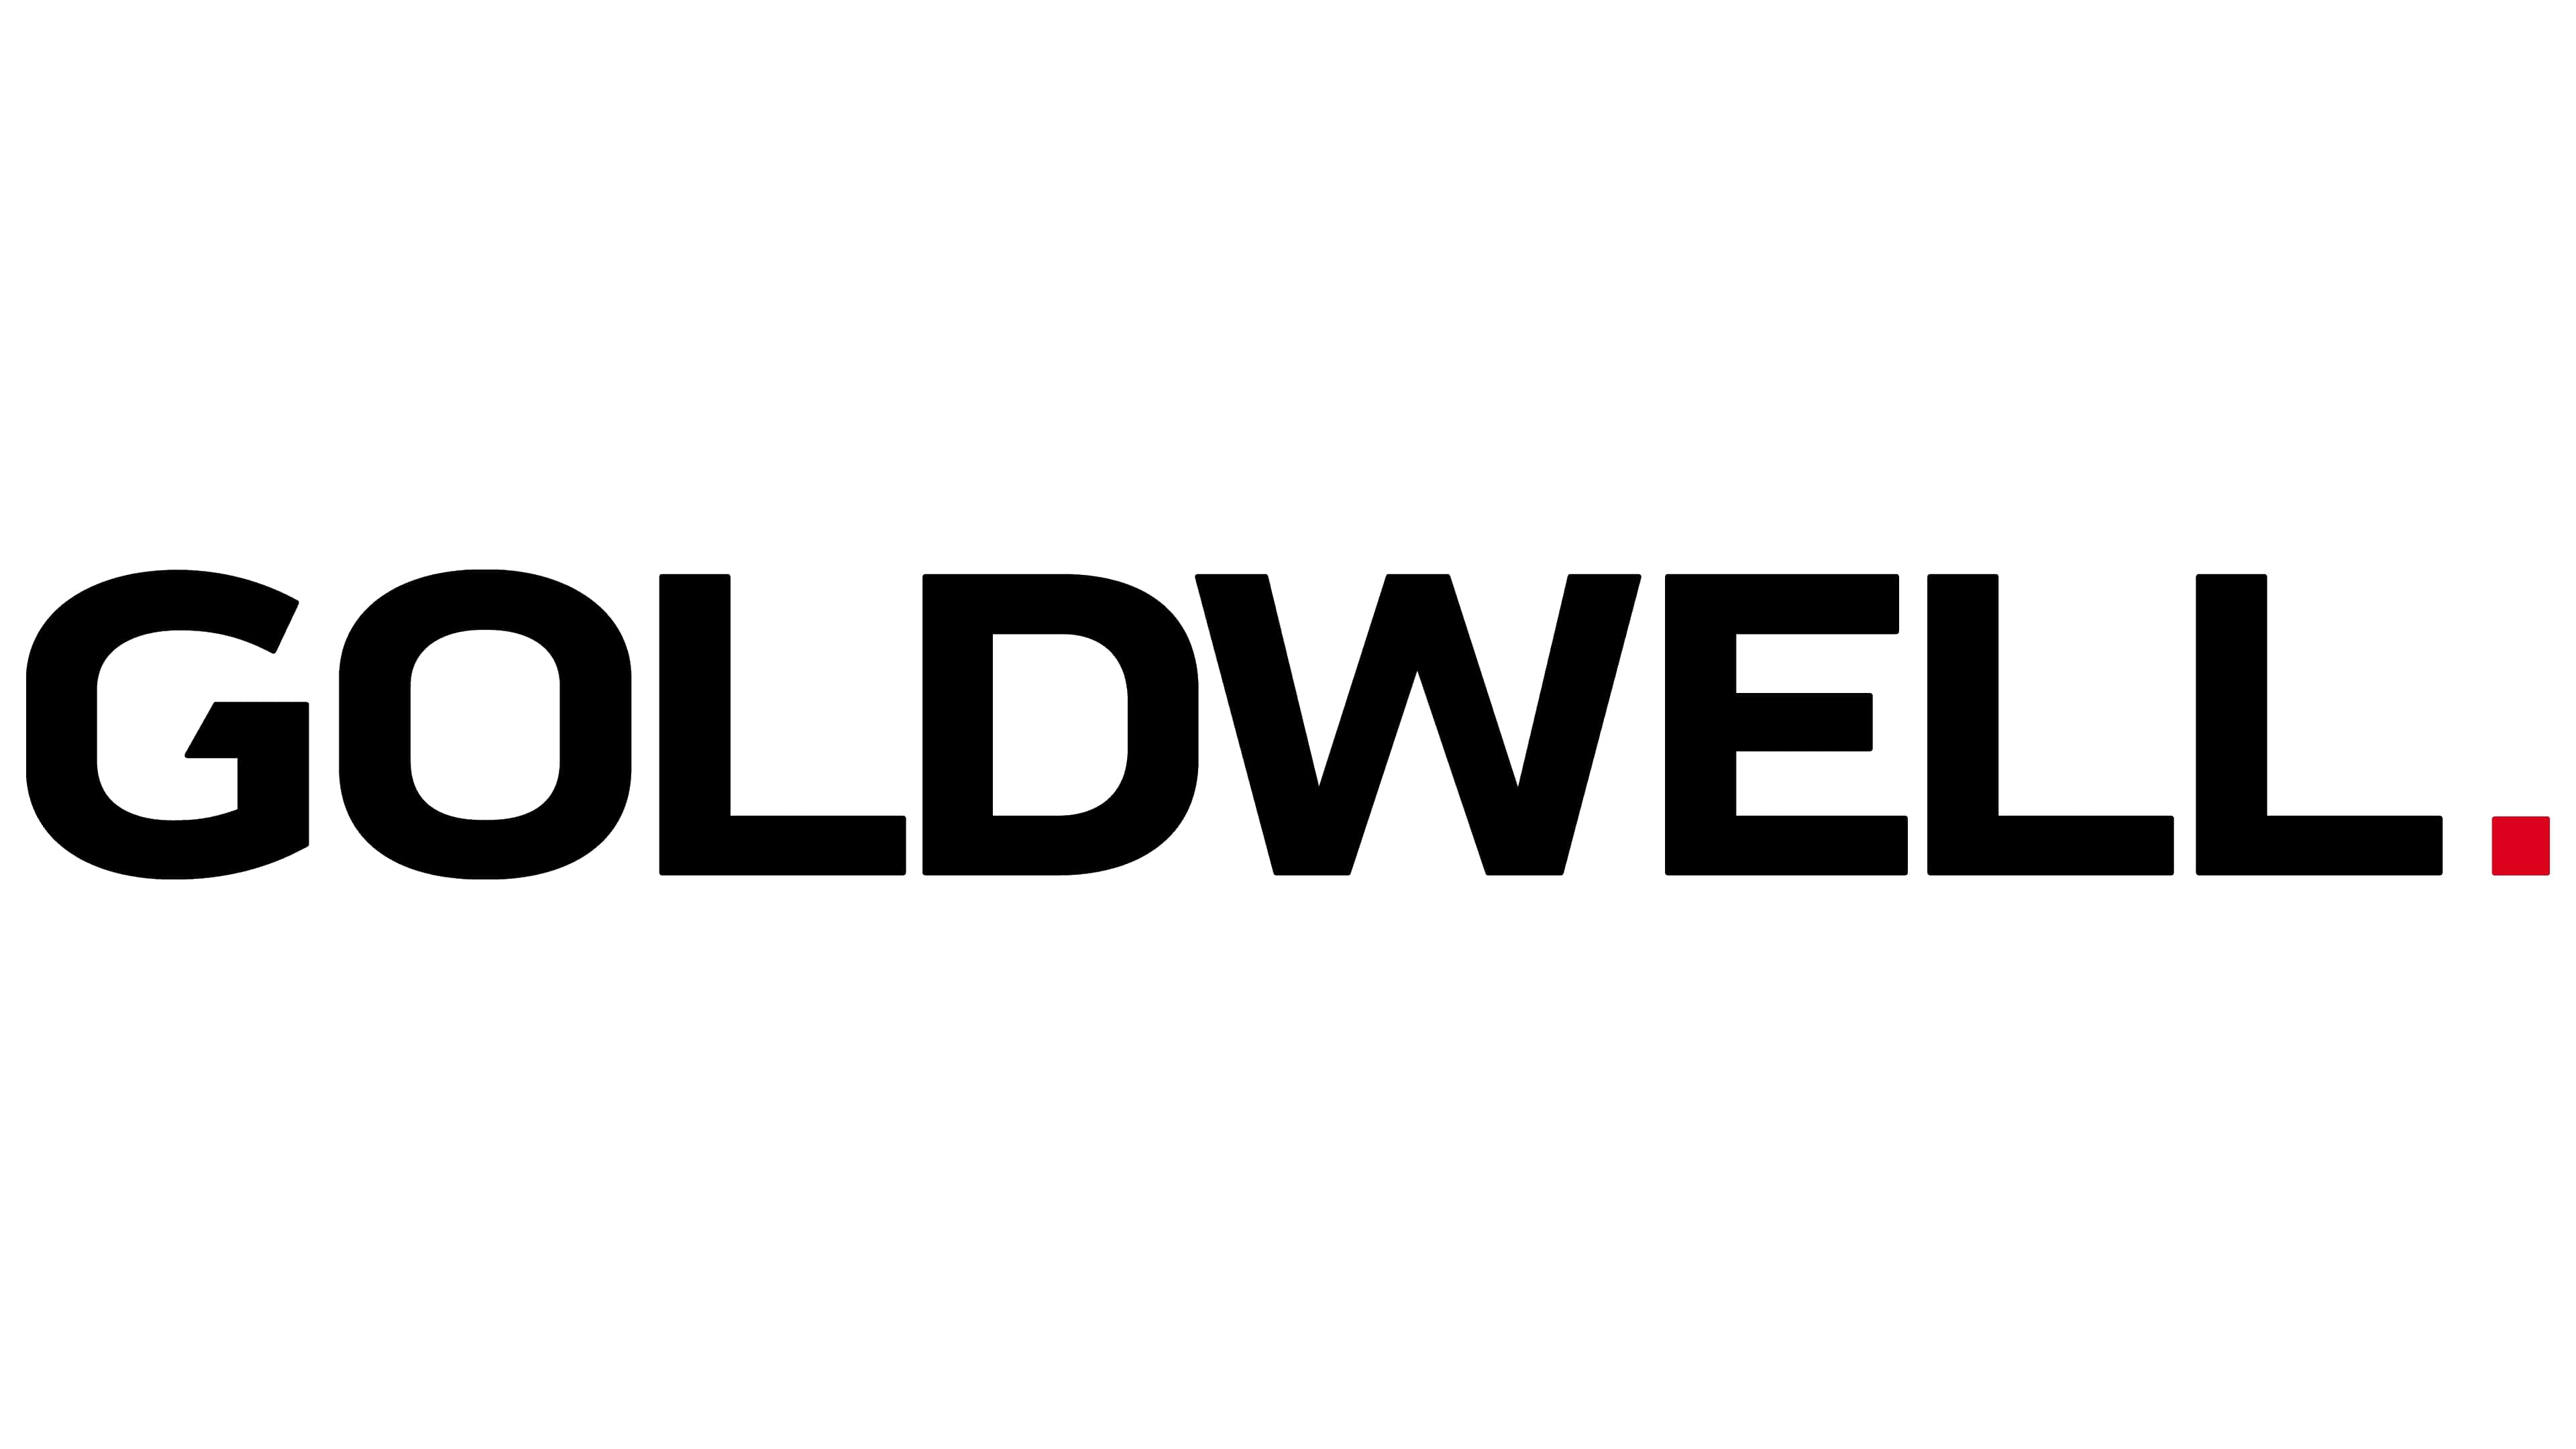 Mẫu thiết kế logo thương hiệu công ty GOLDWELL